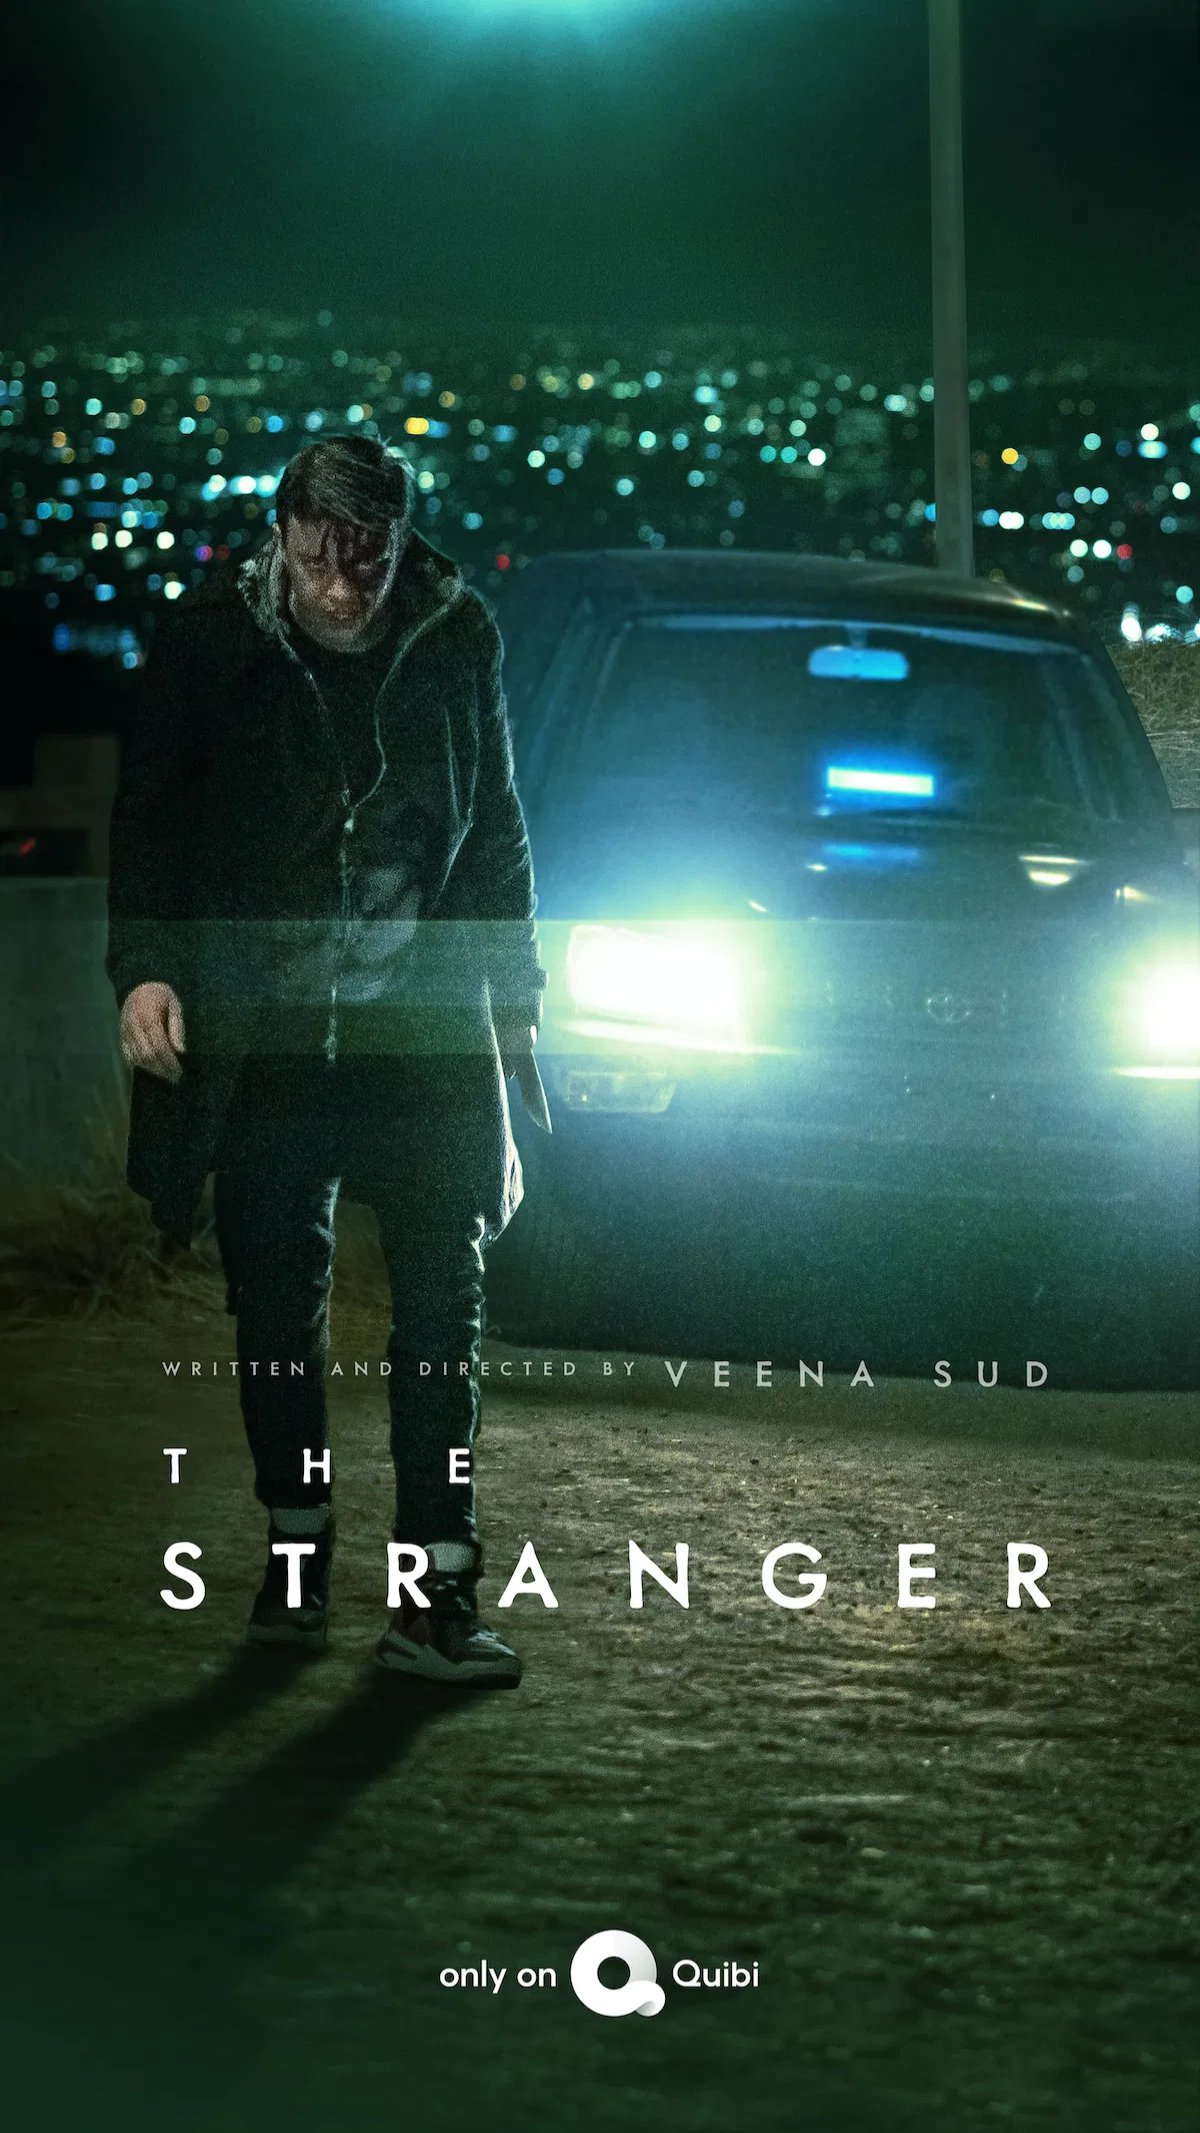 Dane DeHaan minaccioso nel poster di The Stranger